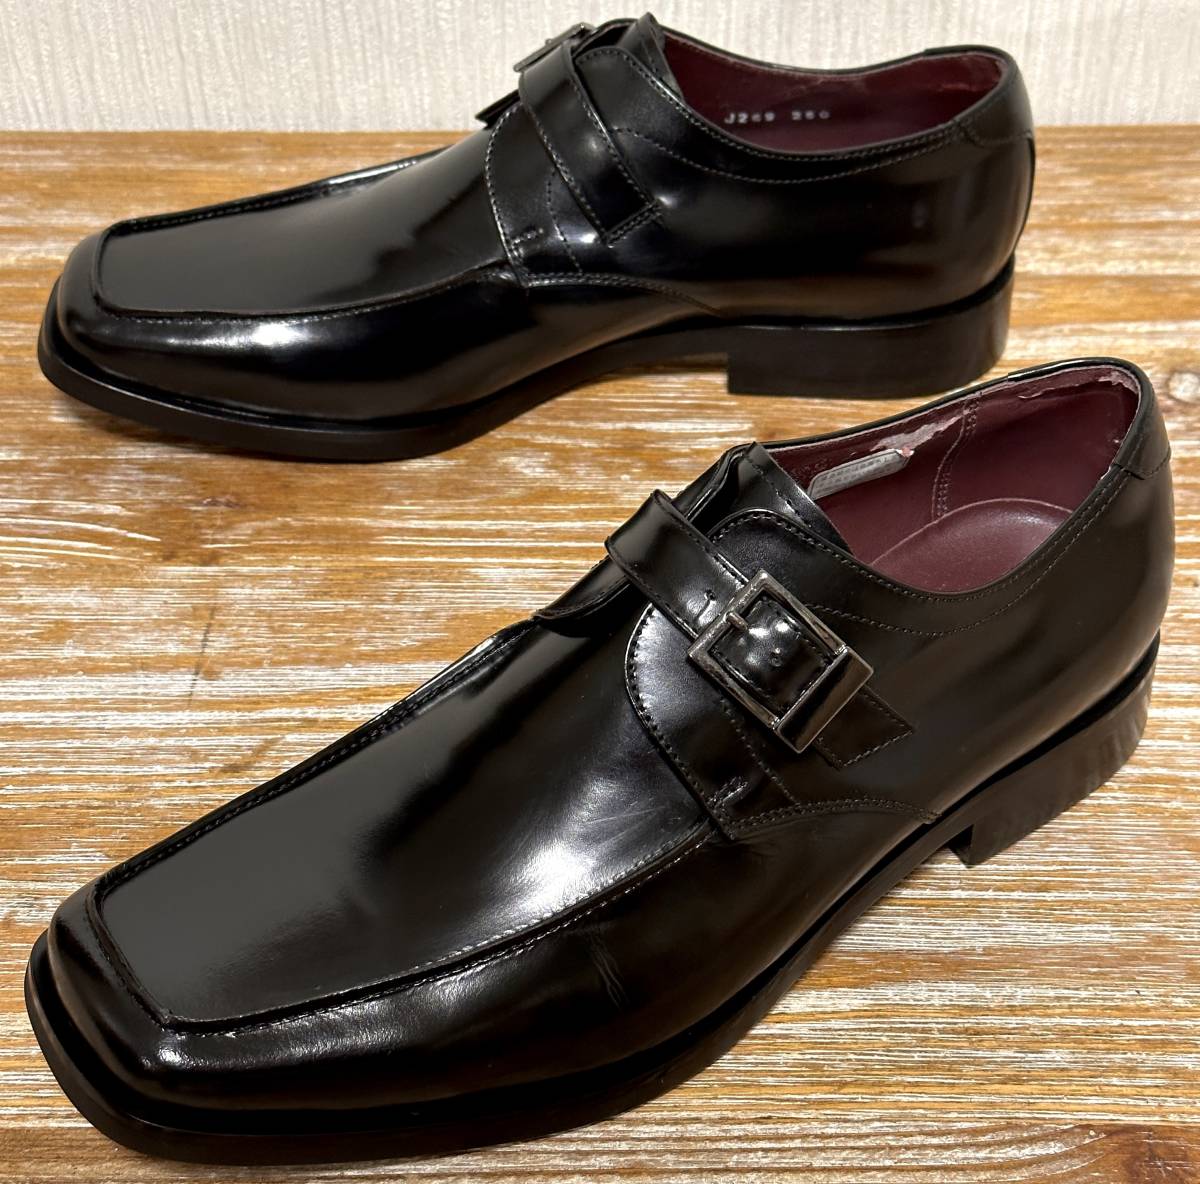 ほぼ未使用の極美品！ REGAL リーガル Worth Collection モンクストラップ 黒 25.0〜25.5cm相当 革靴 ビジネス  レザーシューズ